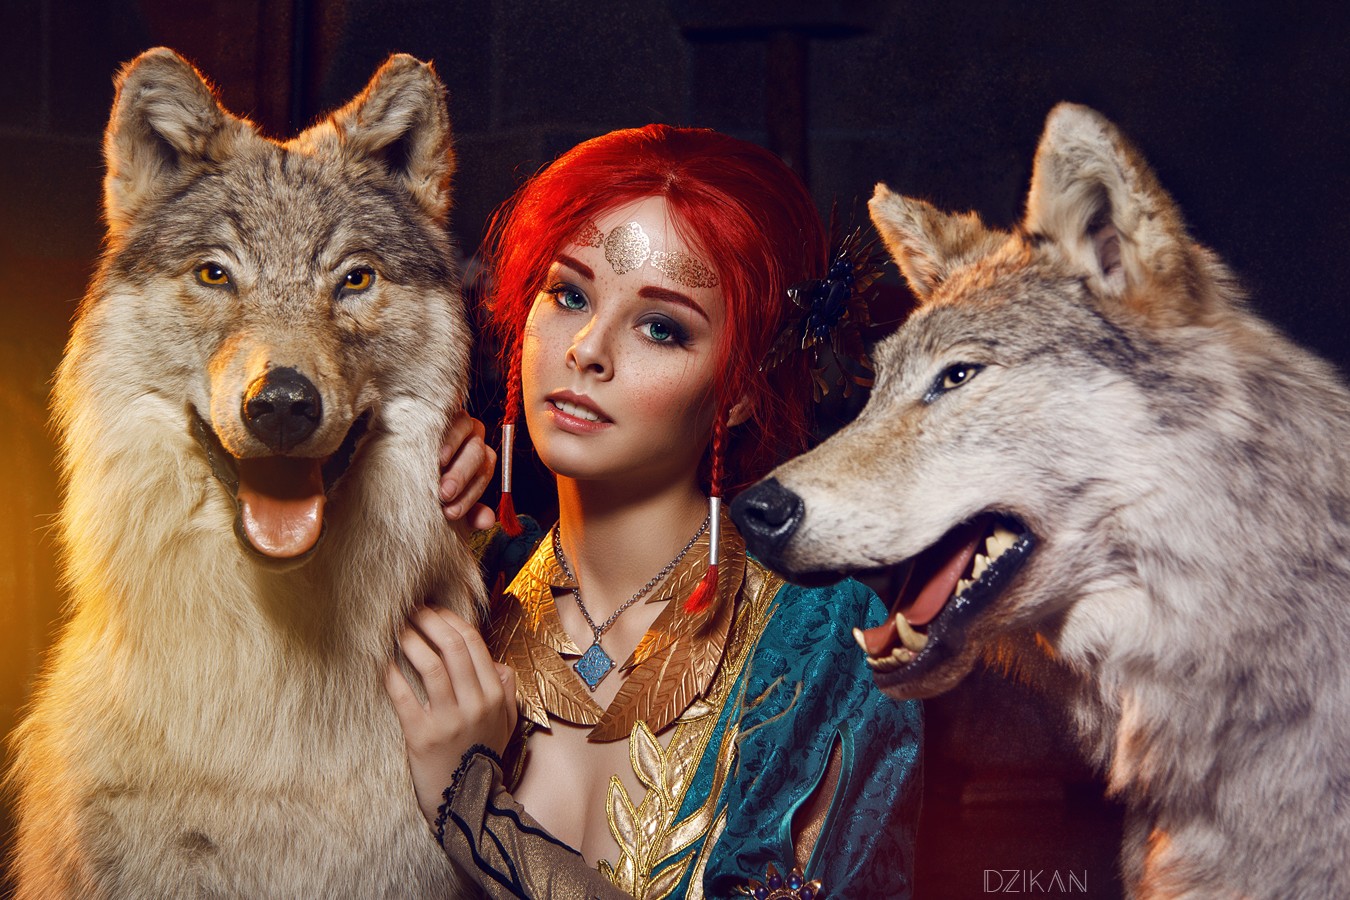 People 1350x900 cosplay Helly von Valentine The Witcher Triss Merigold women model wolf The Witcher 3: Wild Hunt